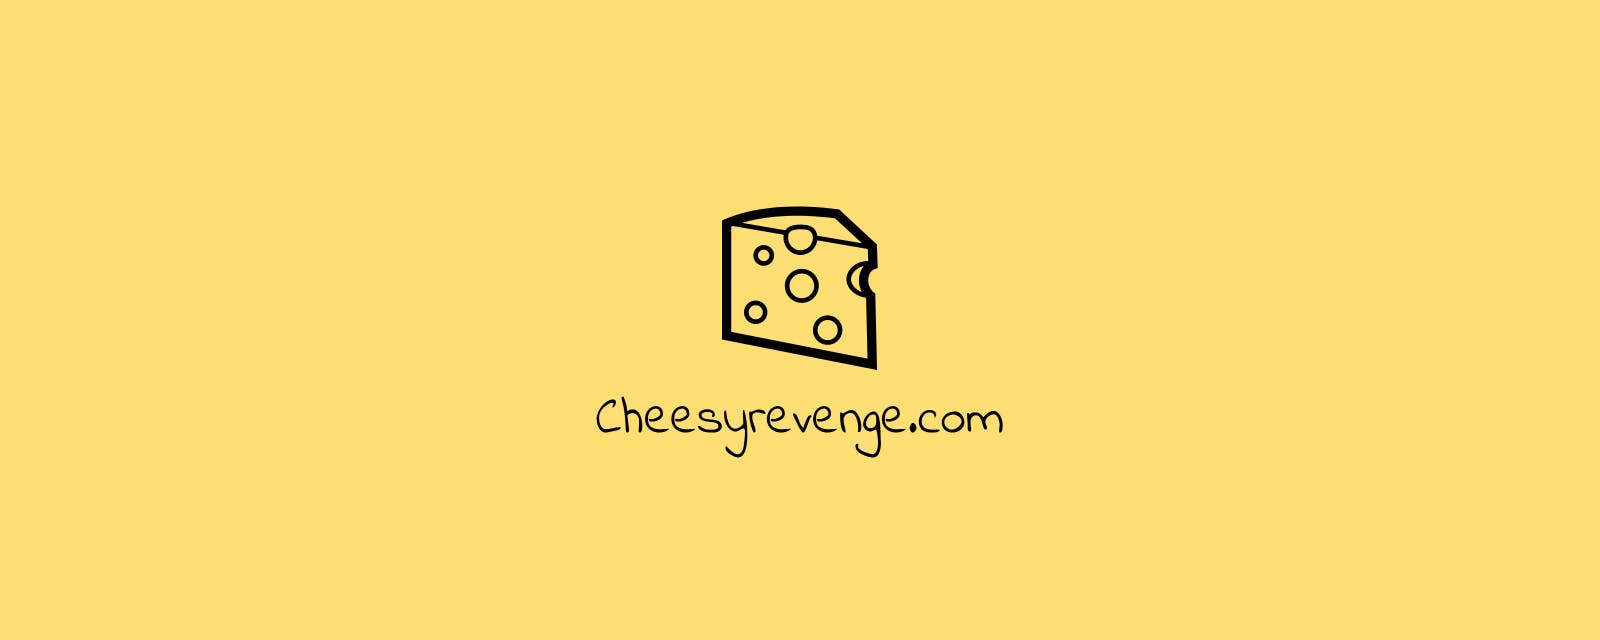 Cheesy Revenge media 1